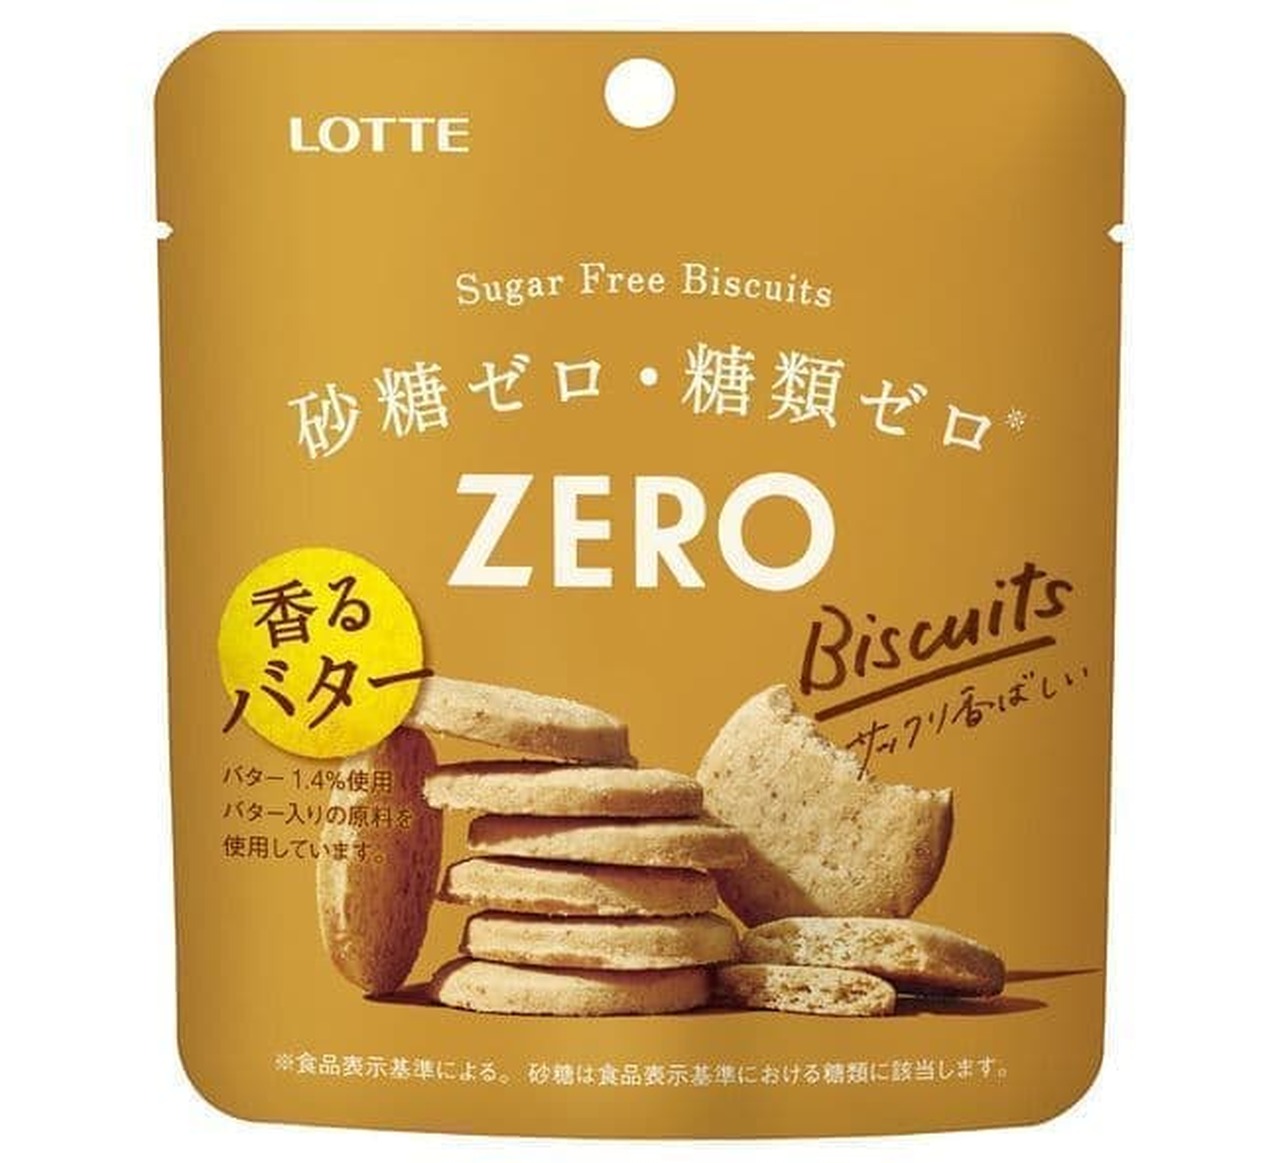 Lotte "Zero Sugar Free Biscuits"